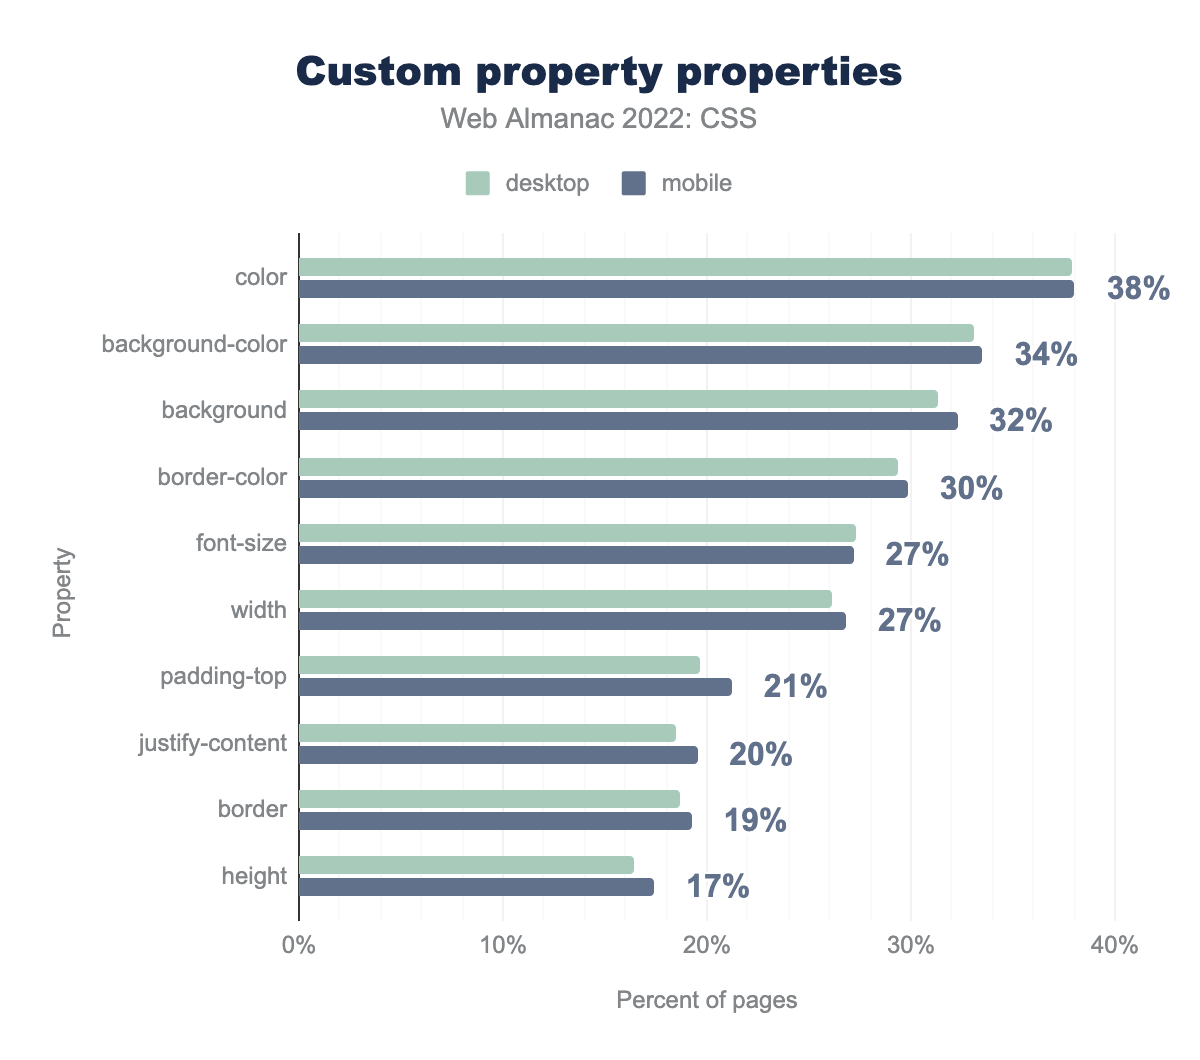 Le proprietà più popolari assegnate tramite proprietà personalizzate per percentuale di pagine.